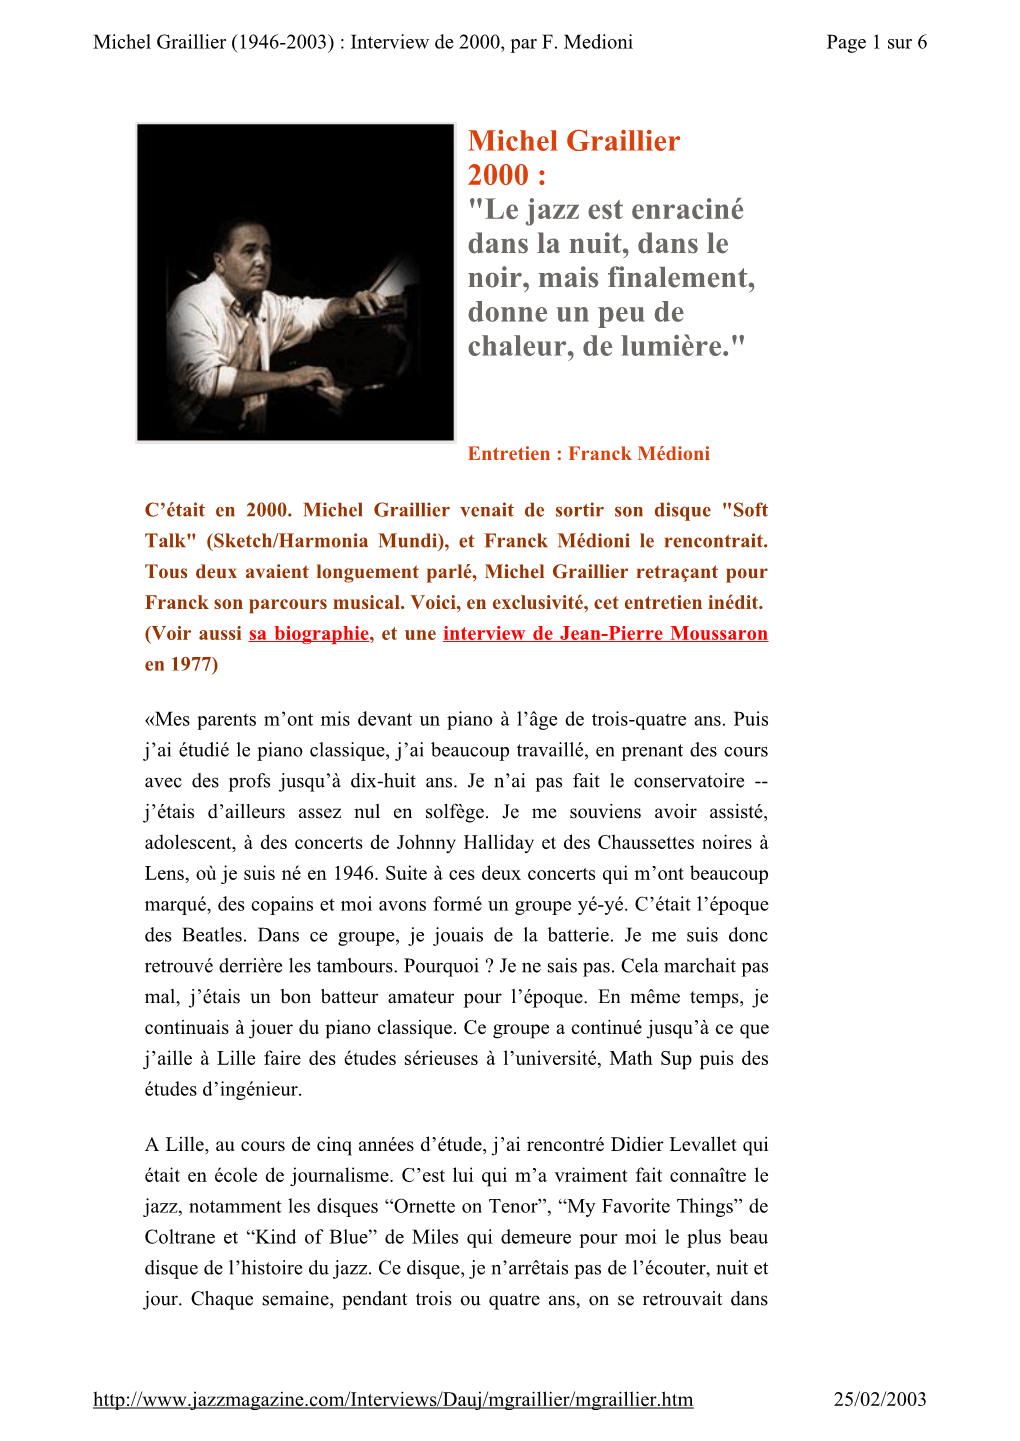 Michel Graillier 2000 : "Le Jazz Est Enraciné Dans La Nuit, Dans Le Noir, Mais Finalement, Donne Un Peu De Chaleur, De Lumière."